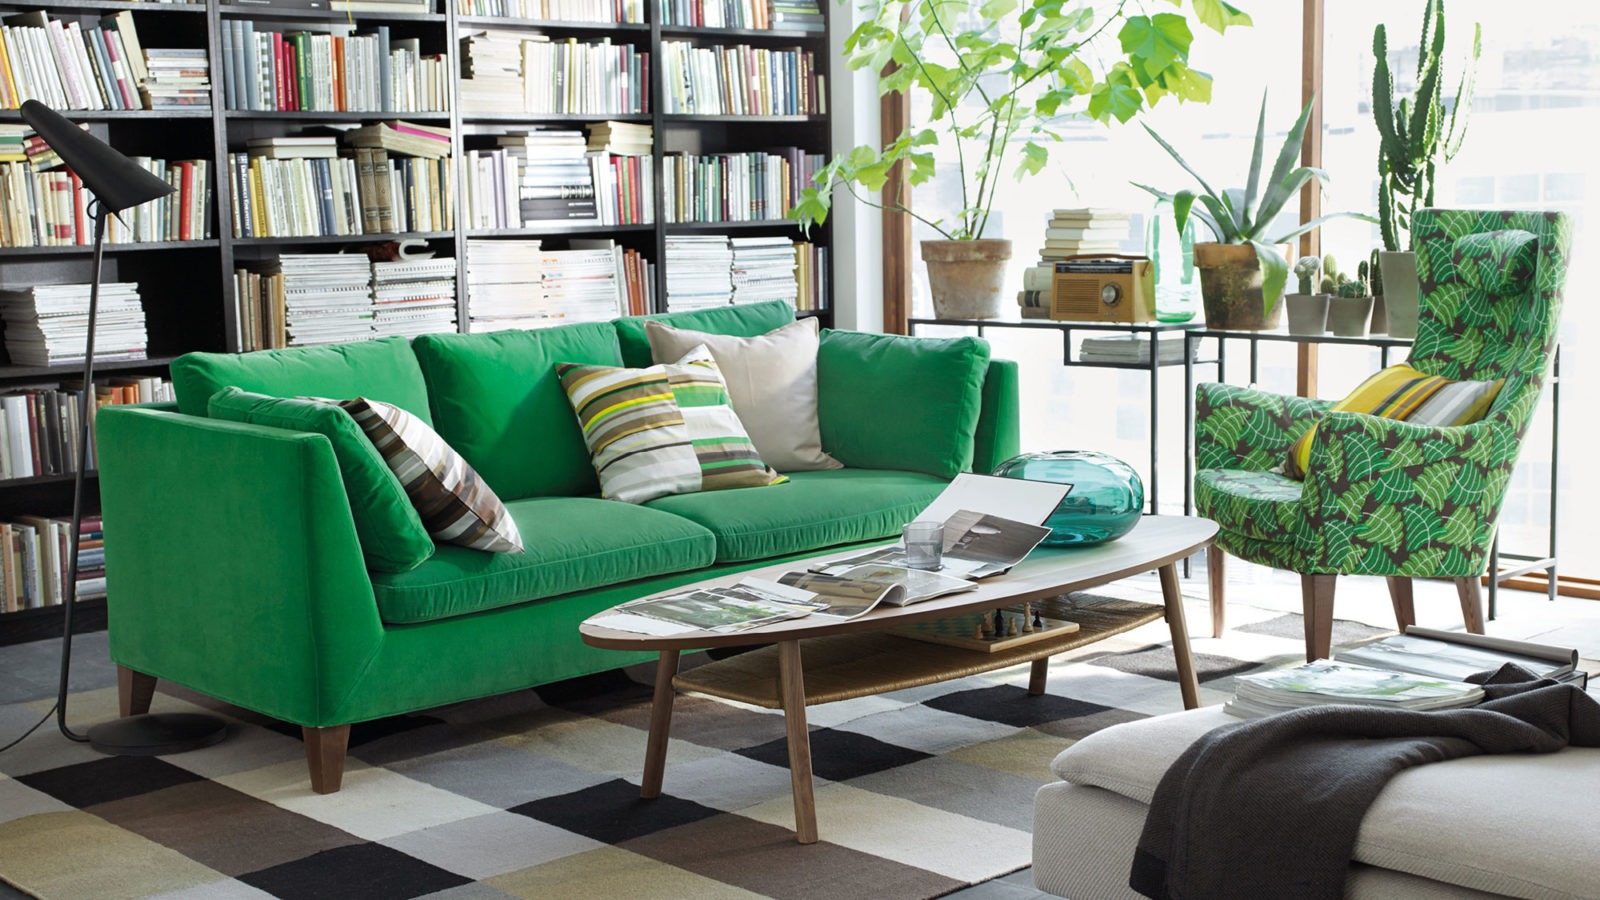 Habitación con sofá verde y sillón con estampado verde ante mesa de centro oval. Plantas verdes y ventana grande y soleada.